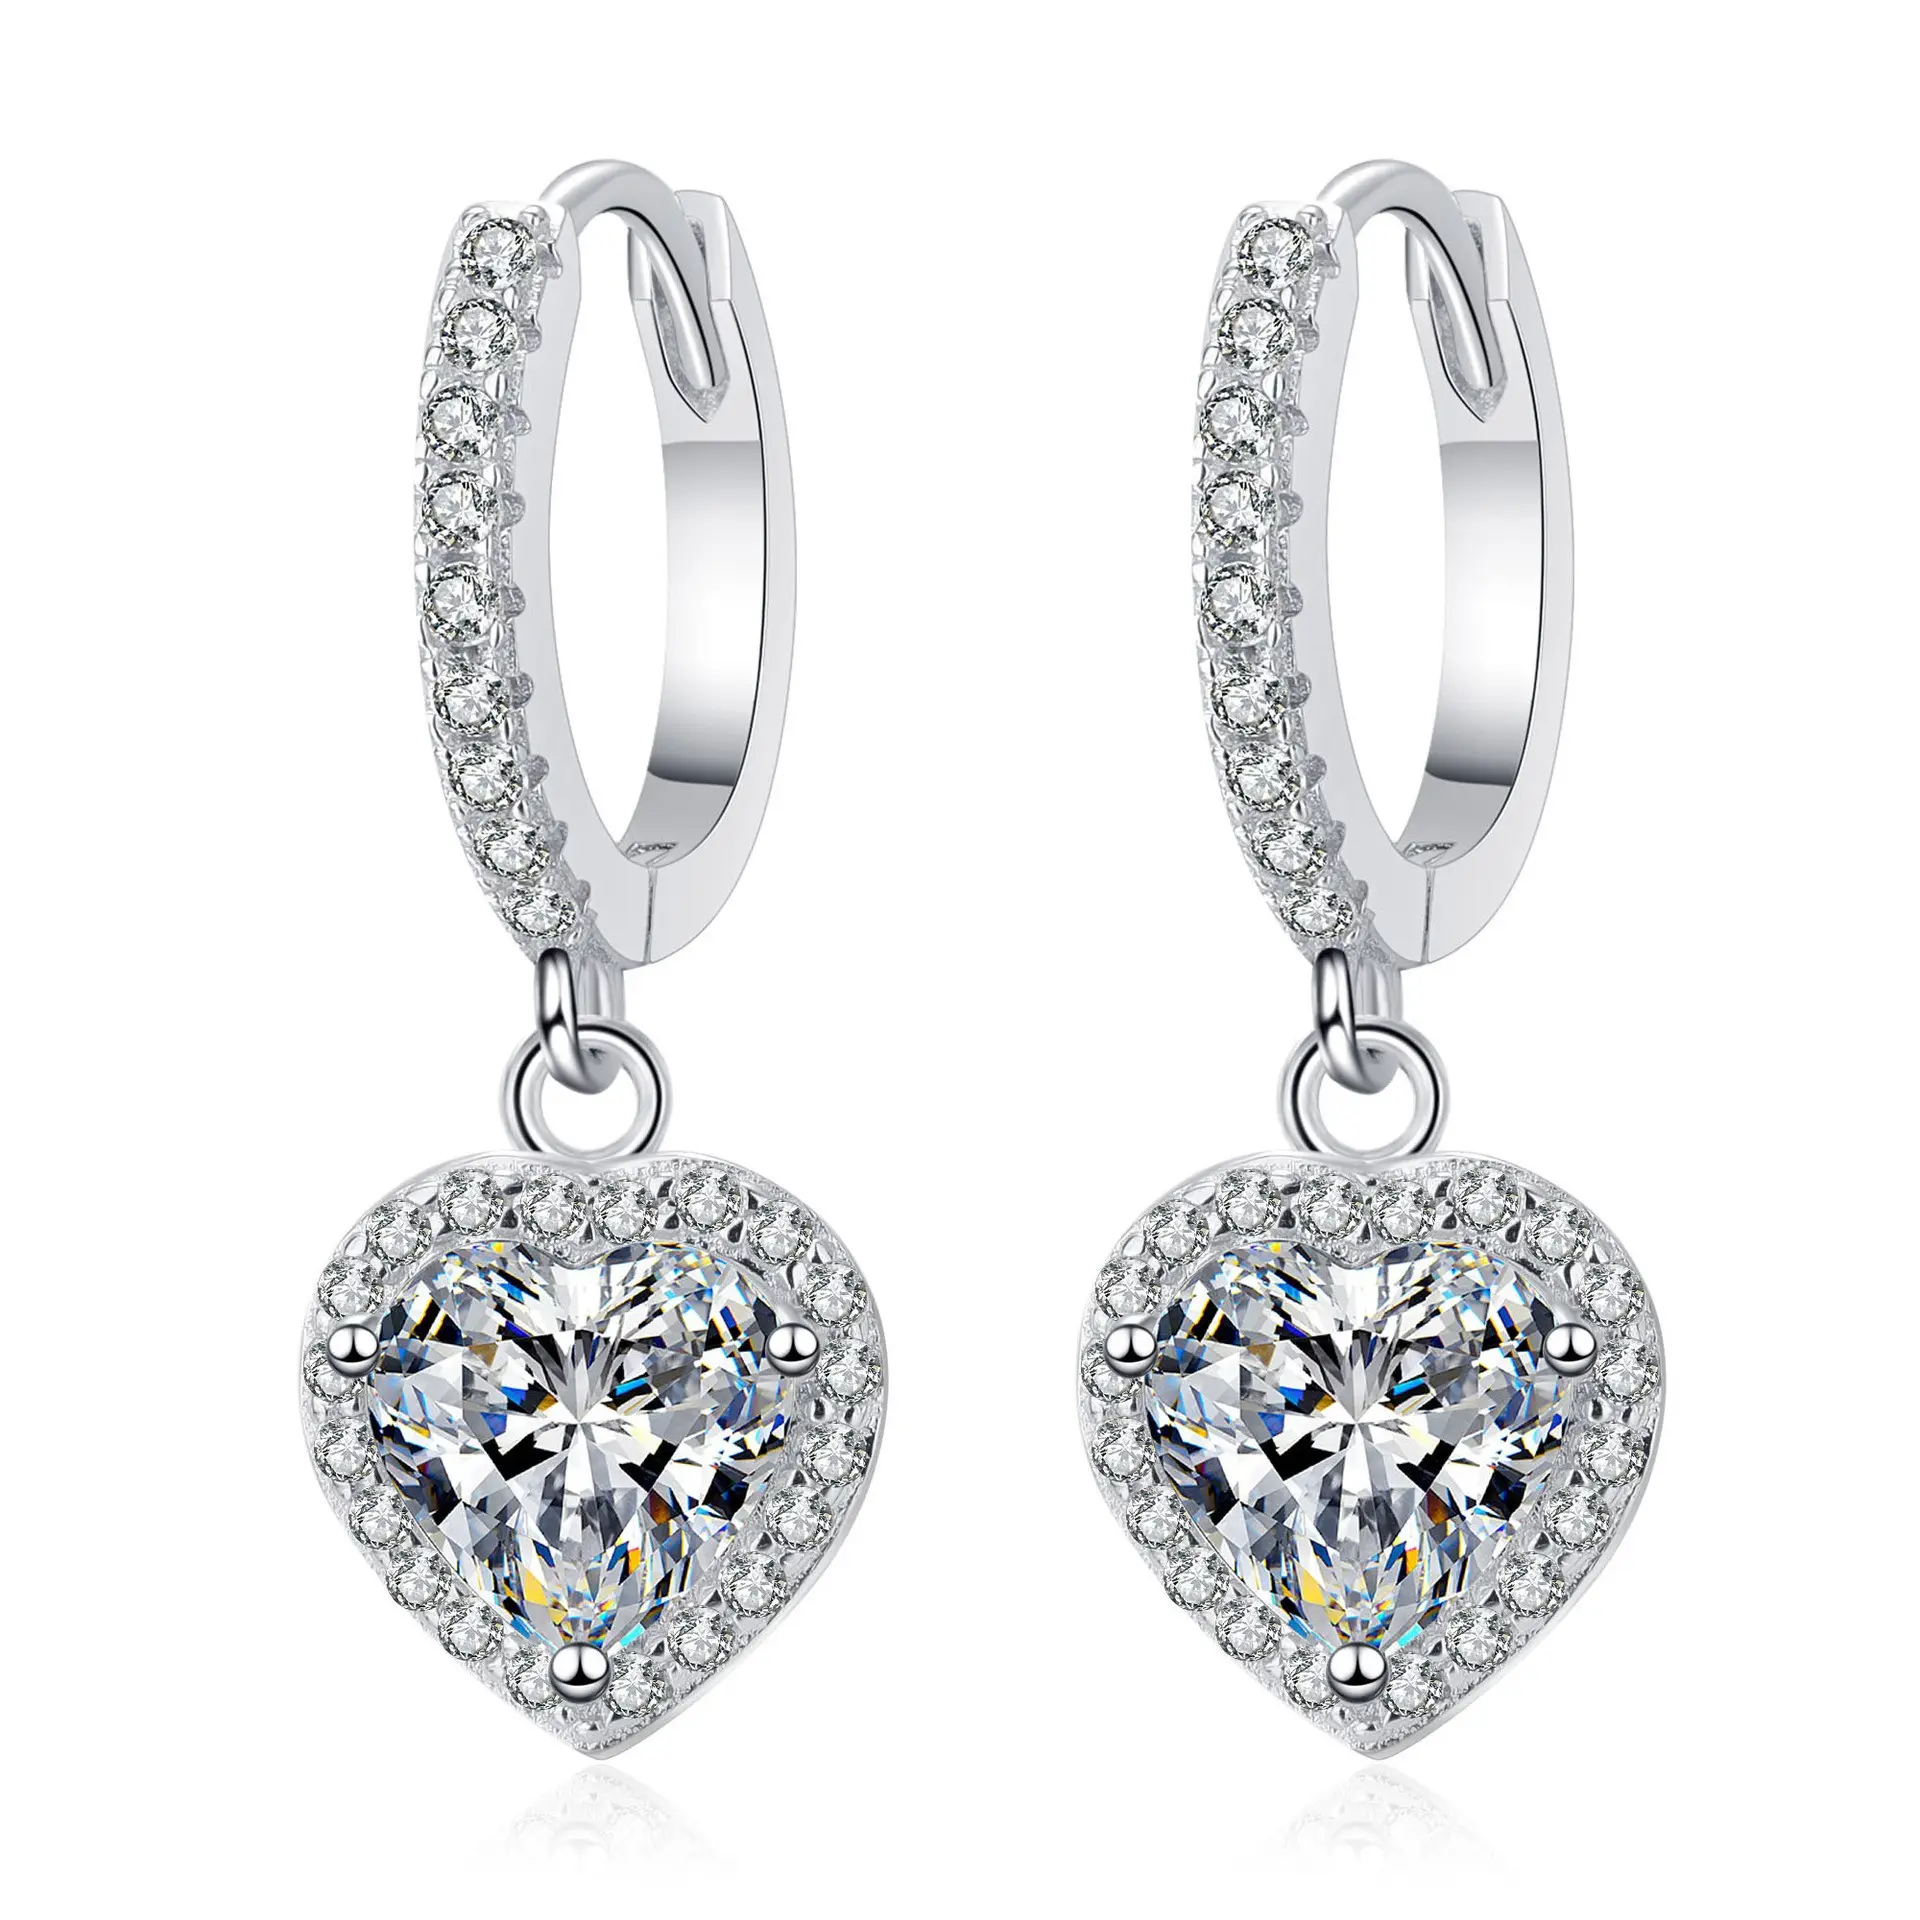 S925 Sterling Silber Herzförmige Hochzeit Creolen Zirkon Kristall eingelegte Frauen Ohrringe